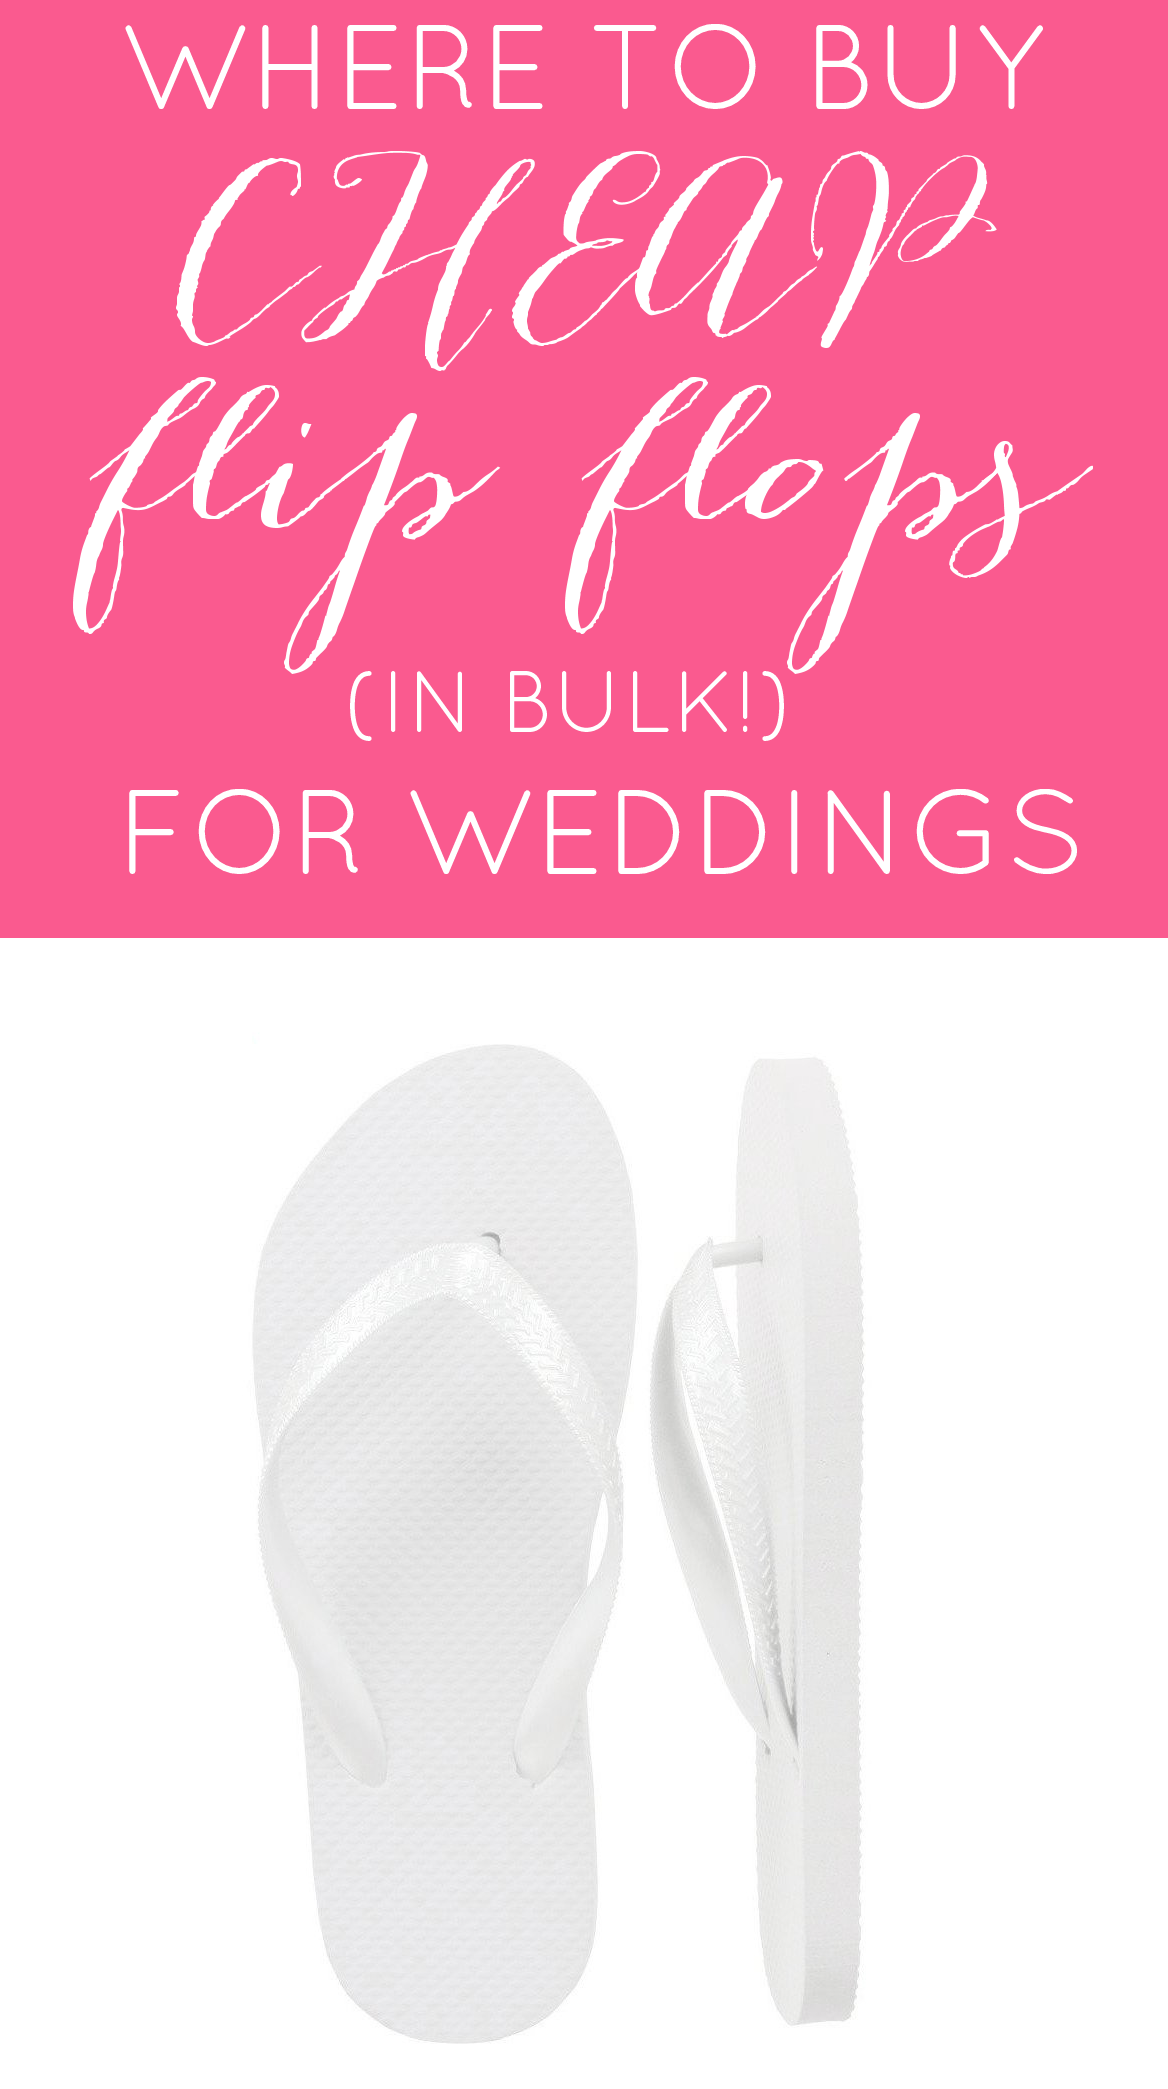 Where to Buy Cheap Flip Flops in Bulk for Weddings